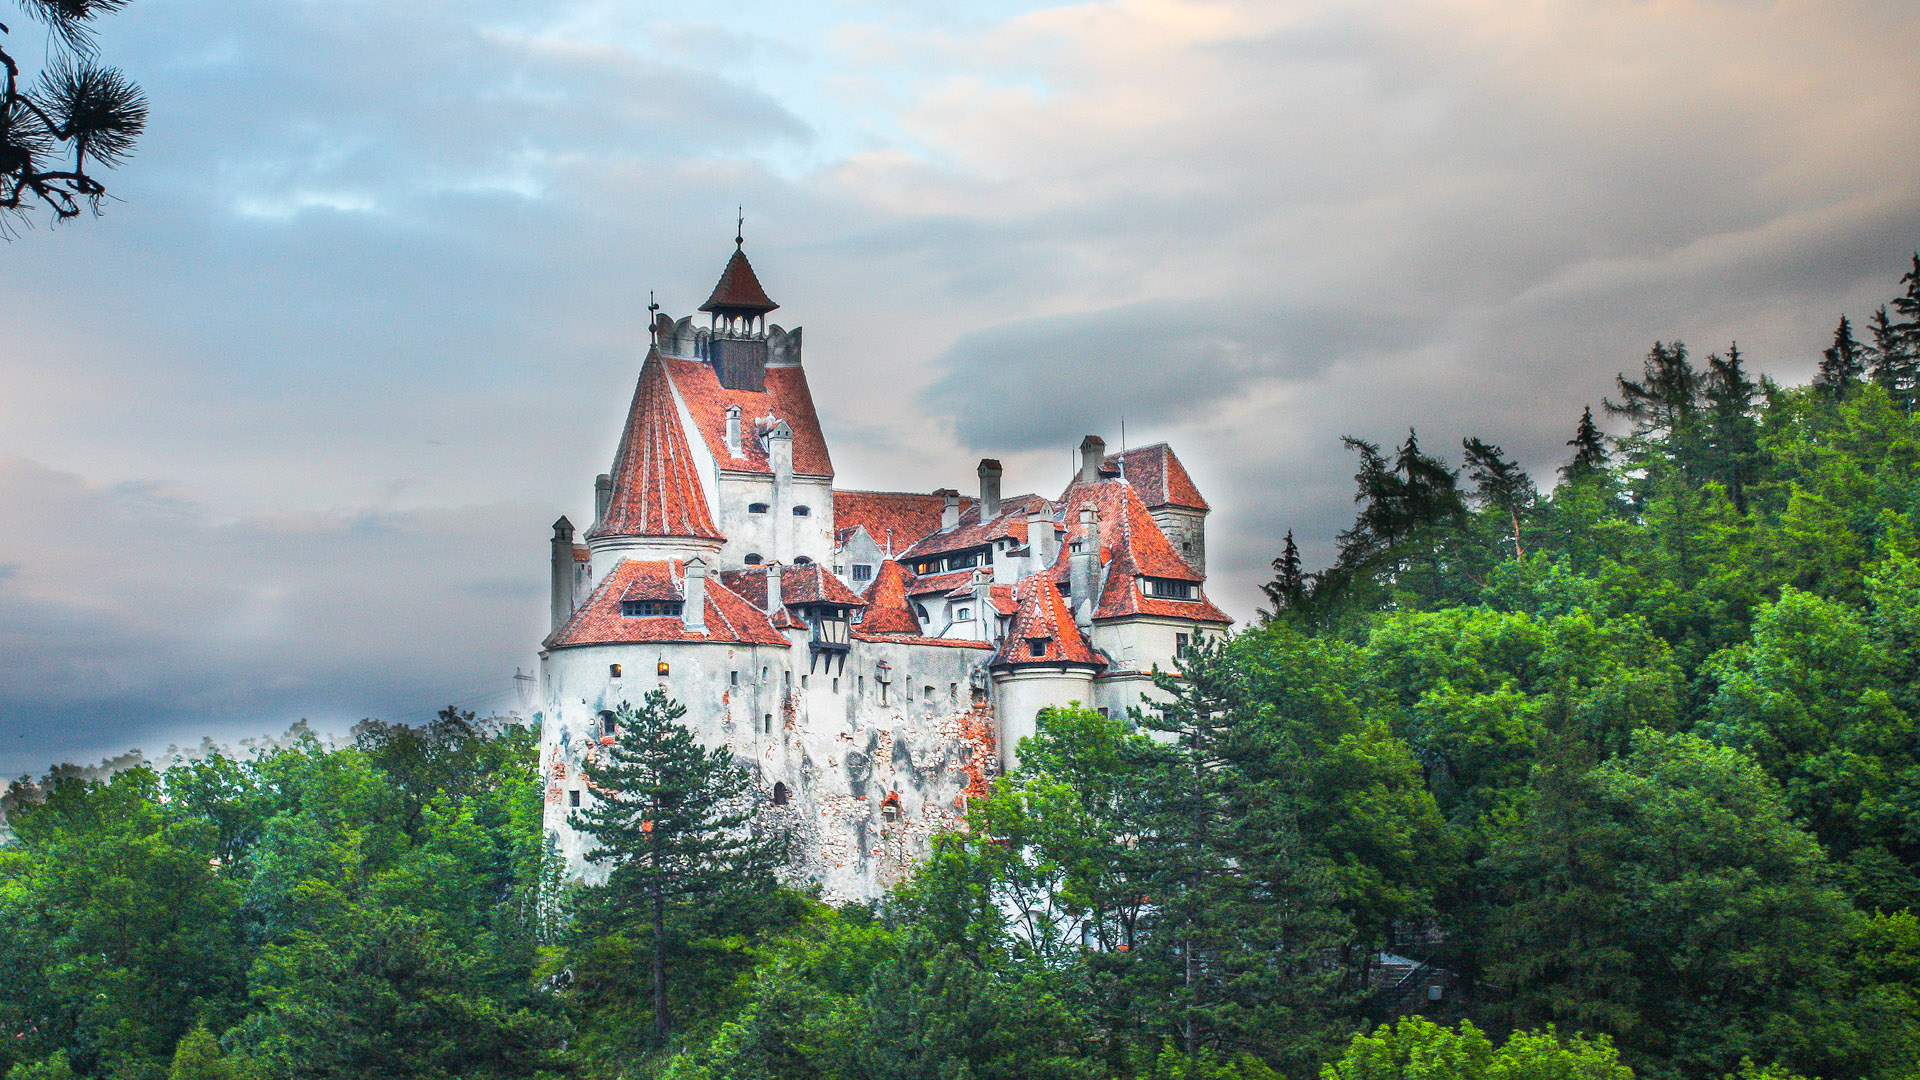 Трансильвания где это находится. Трансильвания Румыния замок Дракулы. Замок Бран (замок Дракулы), Румыния. Замок Влада Цепеша в Румынии. Замок Бран в Трансильвании (Румыния) – замок Дракулы.